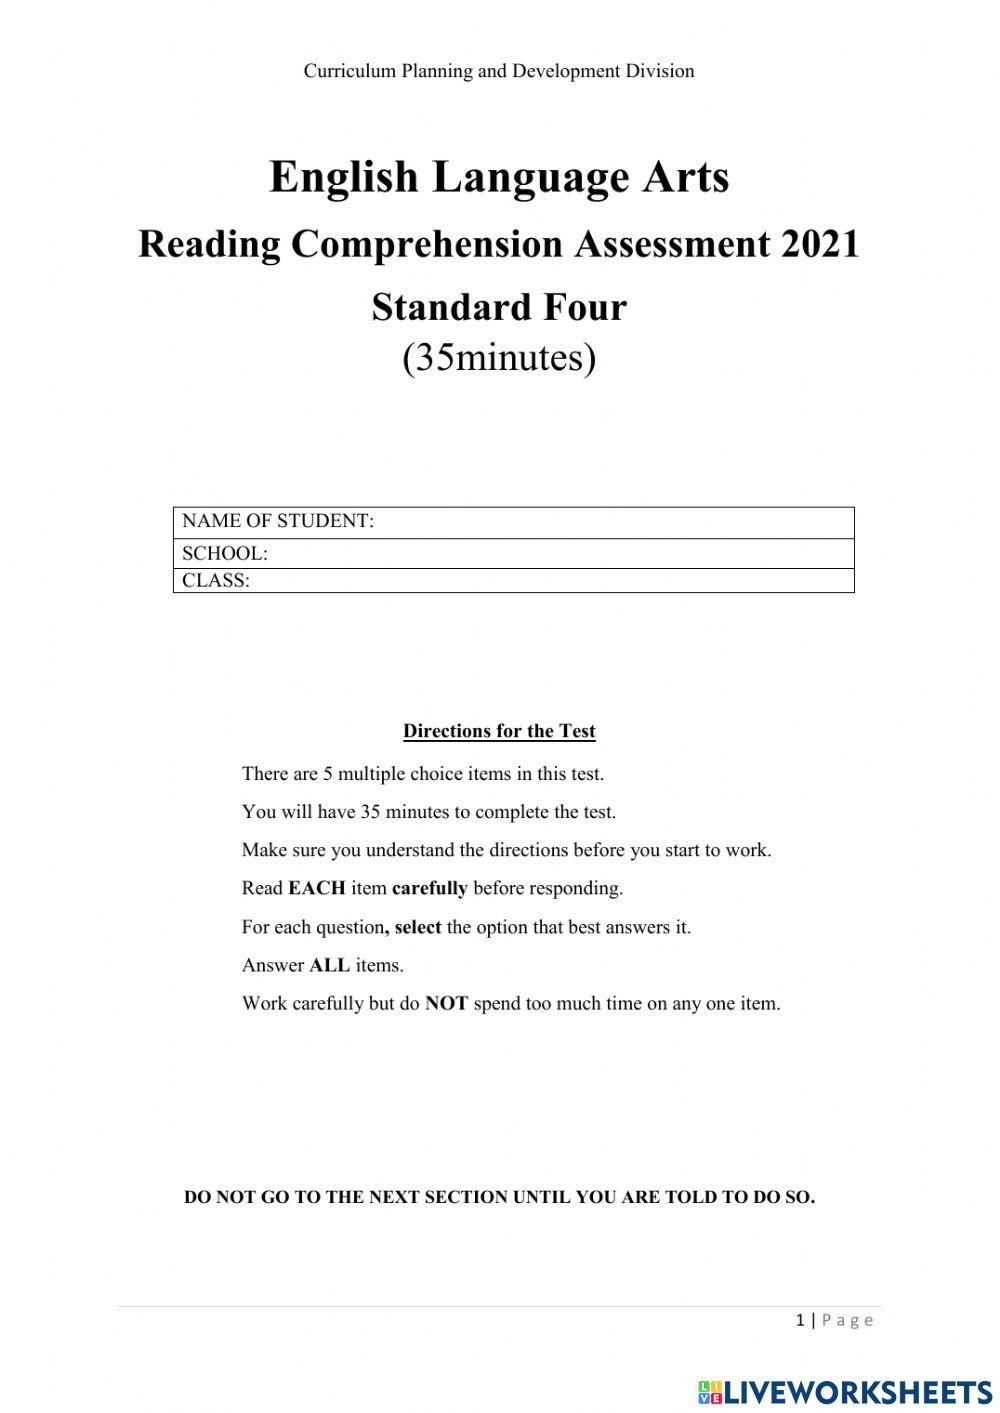 Comprehension Assessment std 4 2021